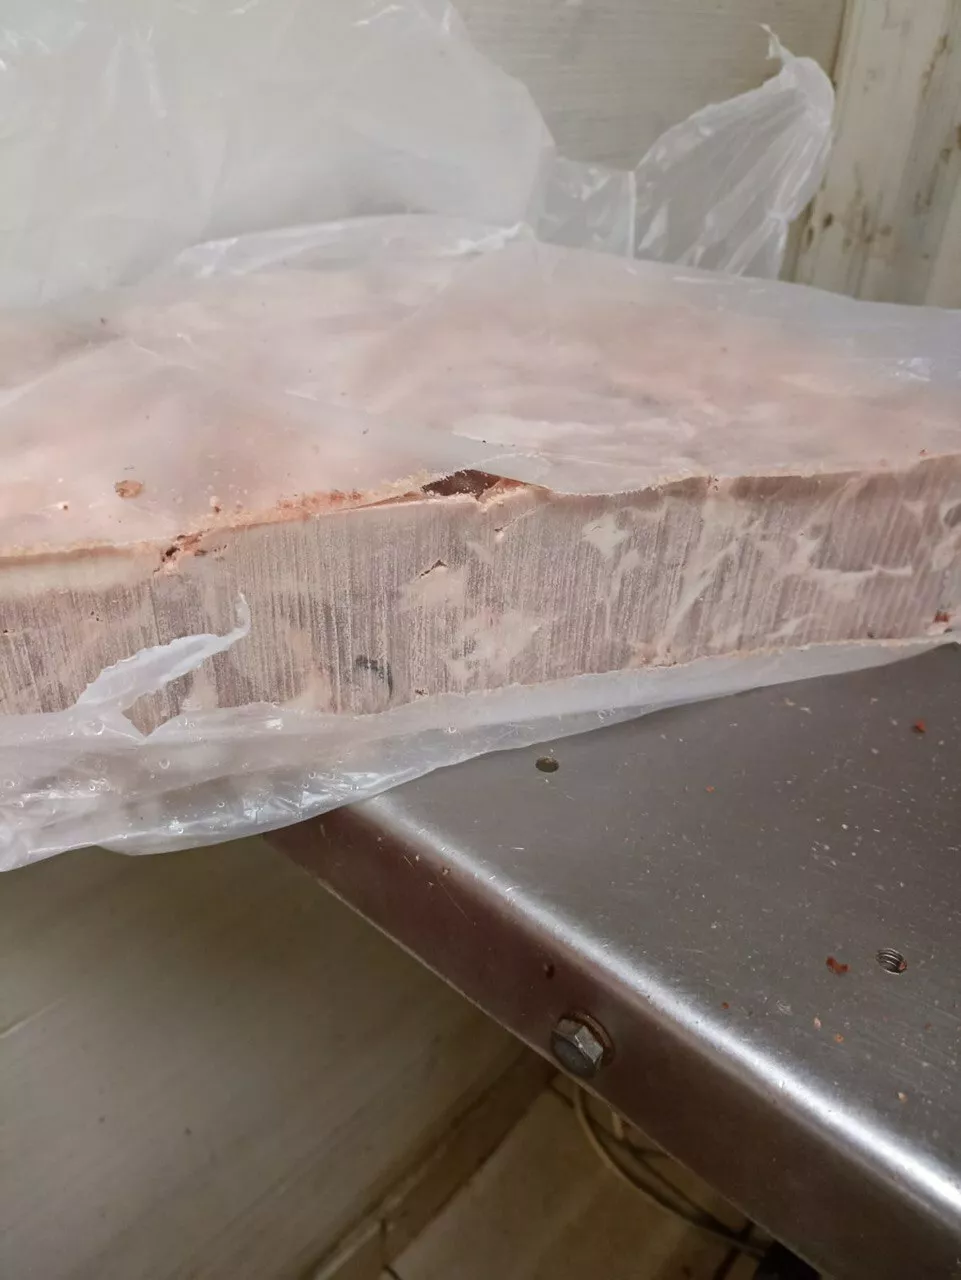 мясо подъязычное свиное в Тамбове